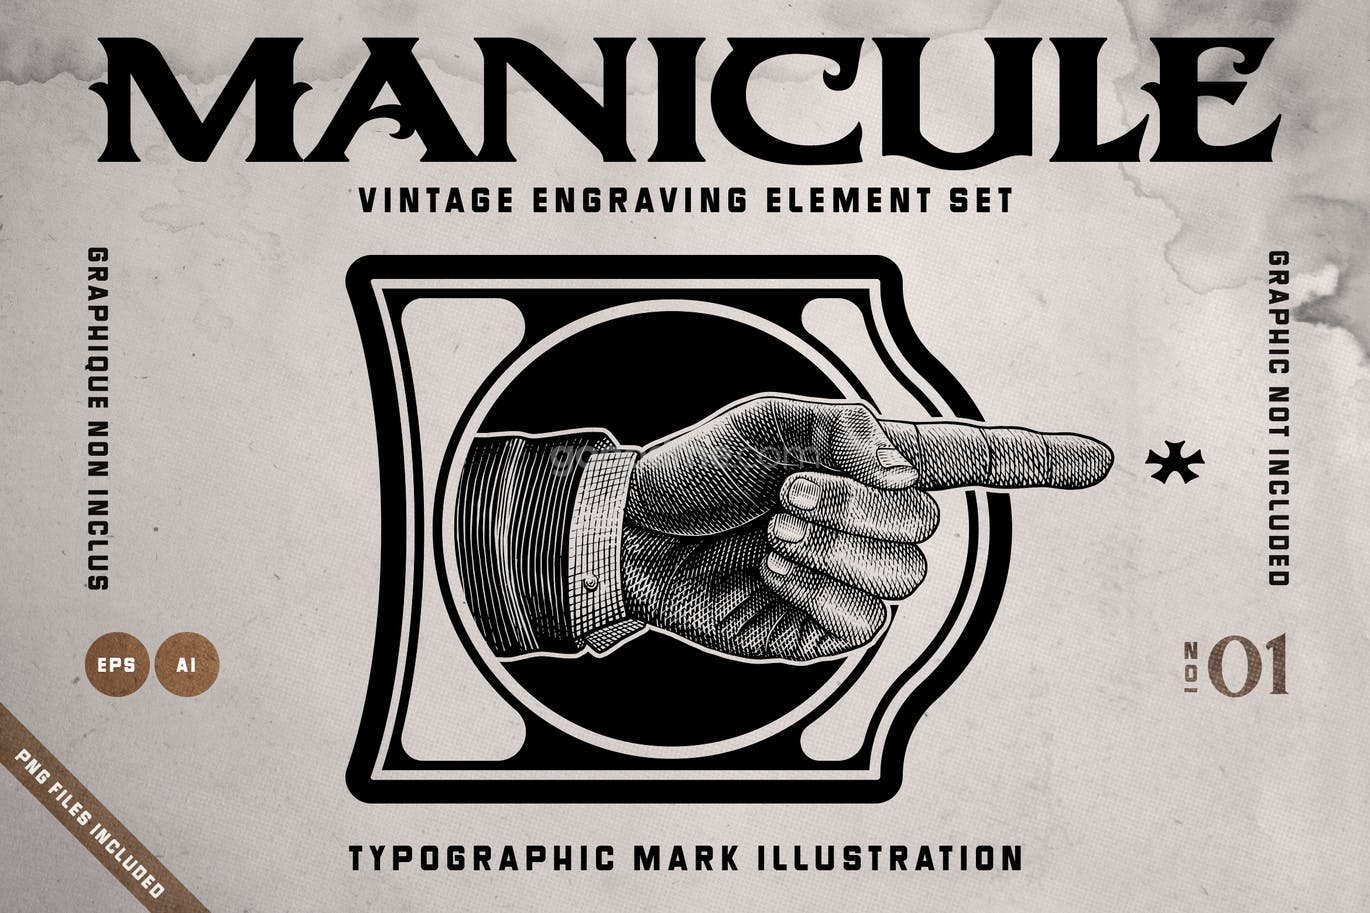 759 复古矢量剪贴画手指图案素材manicula vintage element set